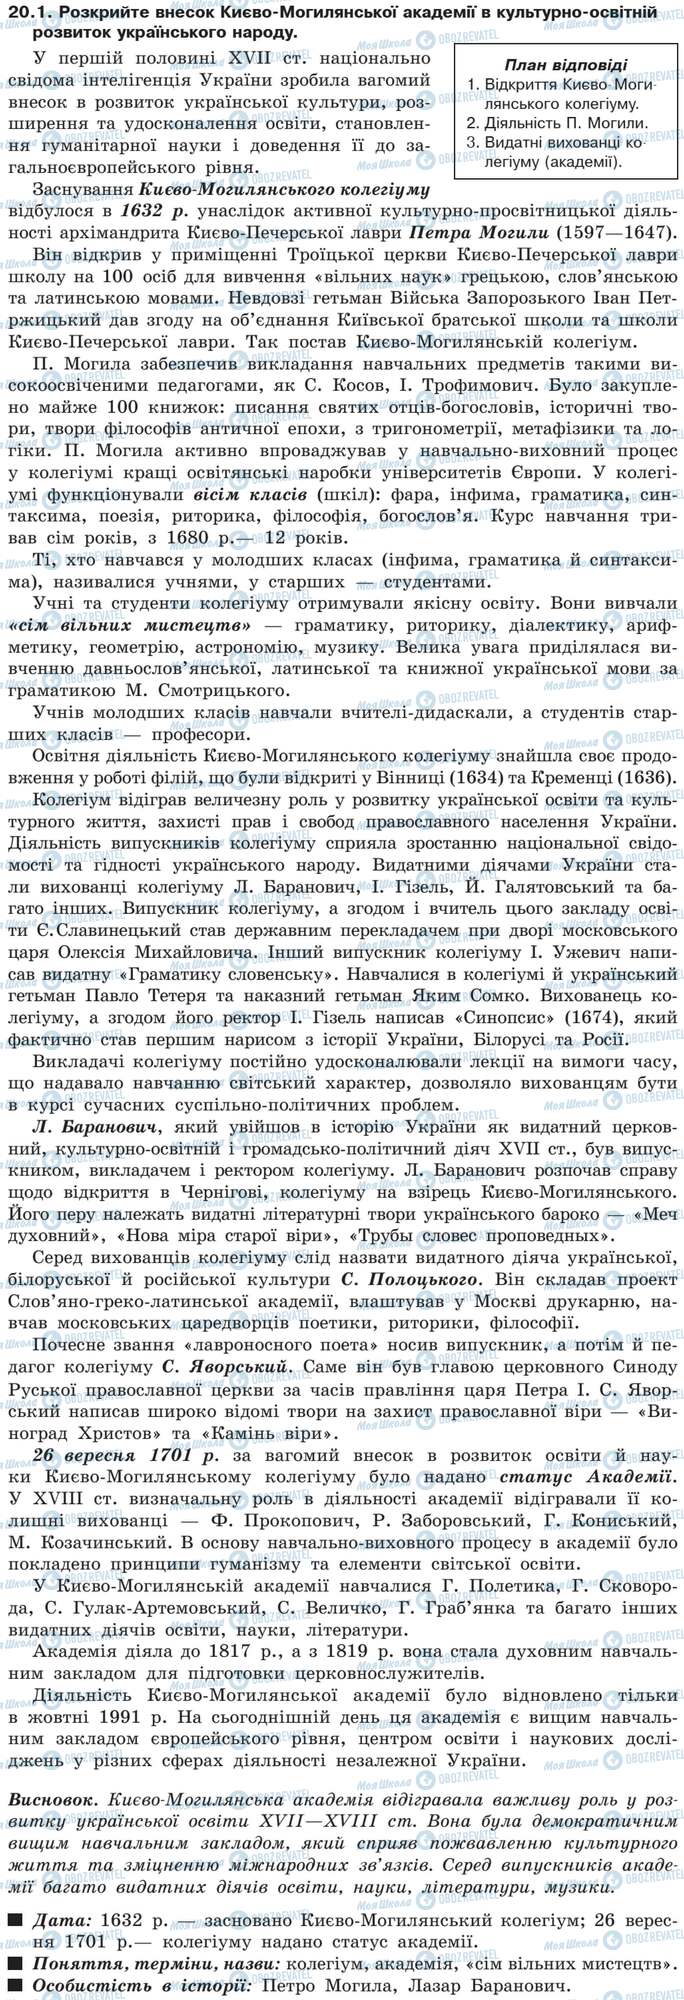 ДПА История Украины 9 класс страница 20.1